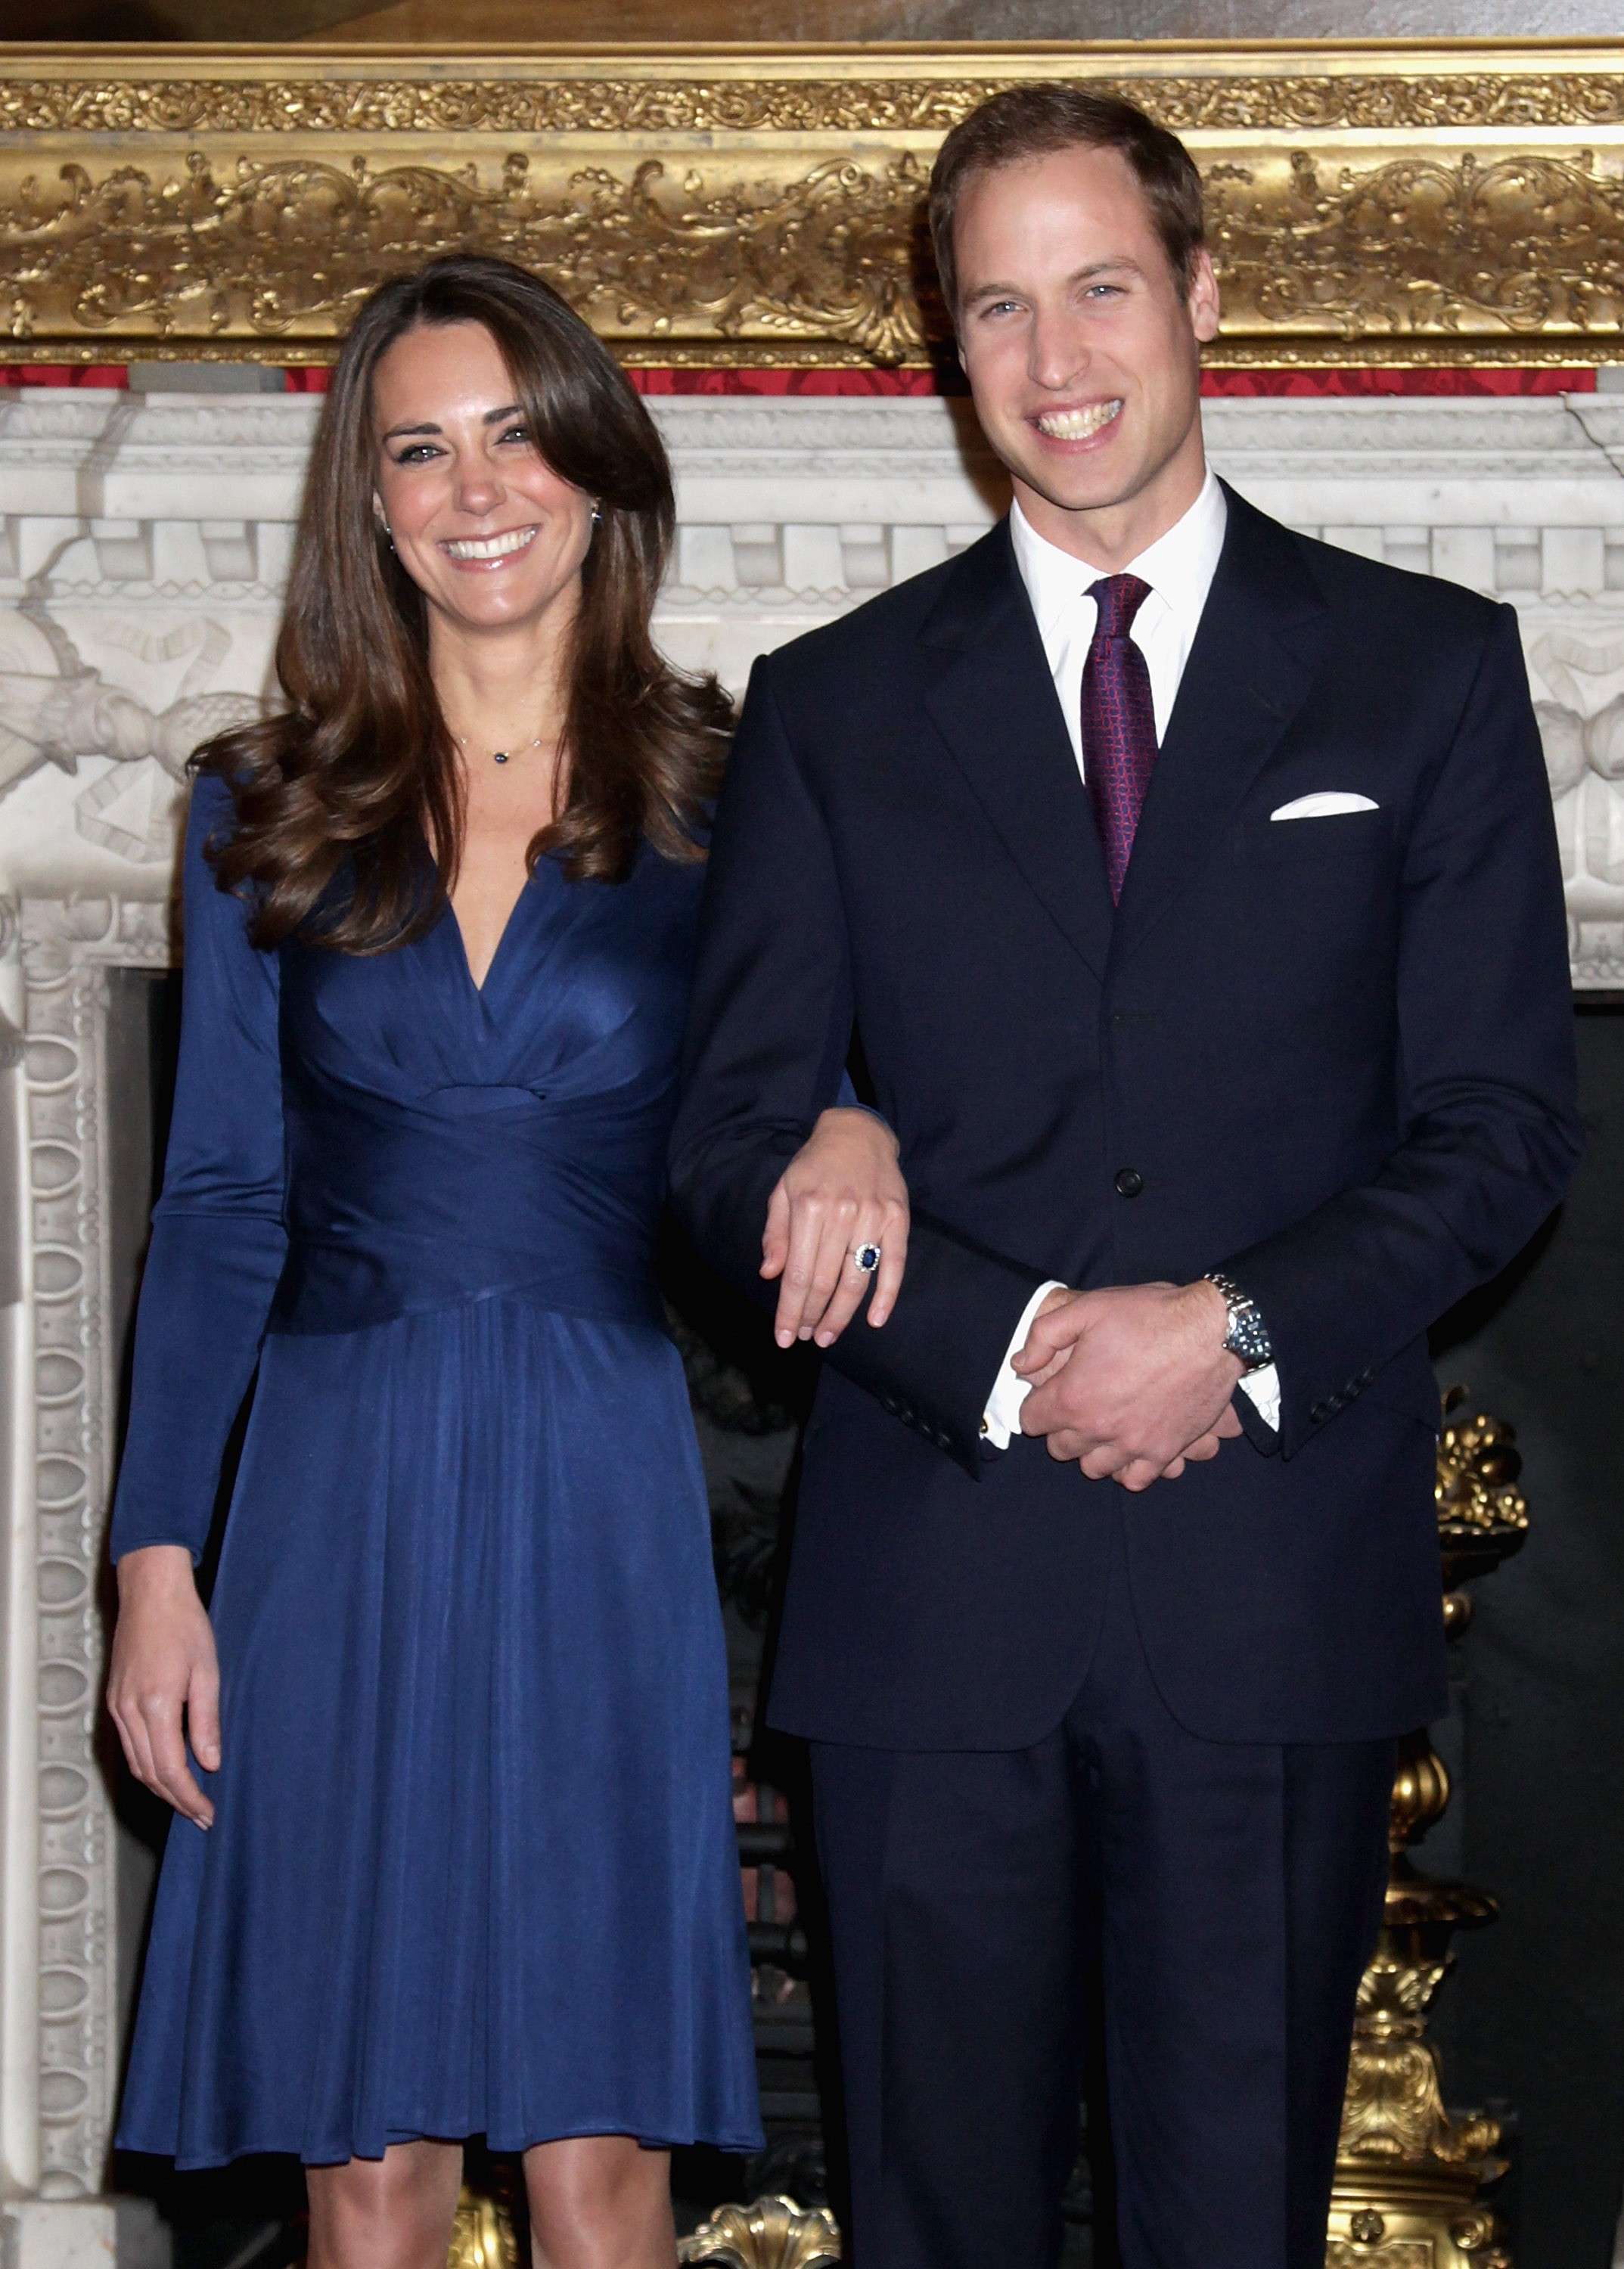 A Duquesa Kate Middleton e o Príncipe William em foto feita no anúncio do noivado do casal, em novembro de 2010 (Foto: Getty Images)